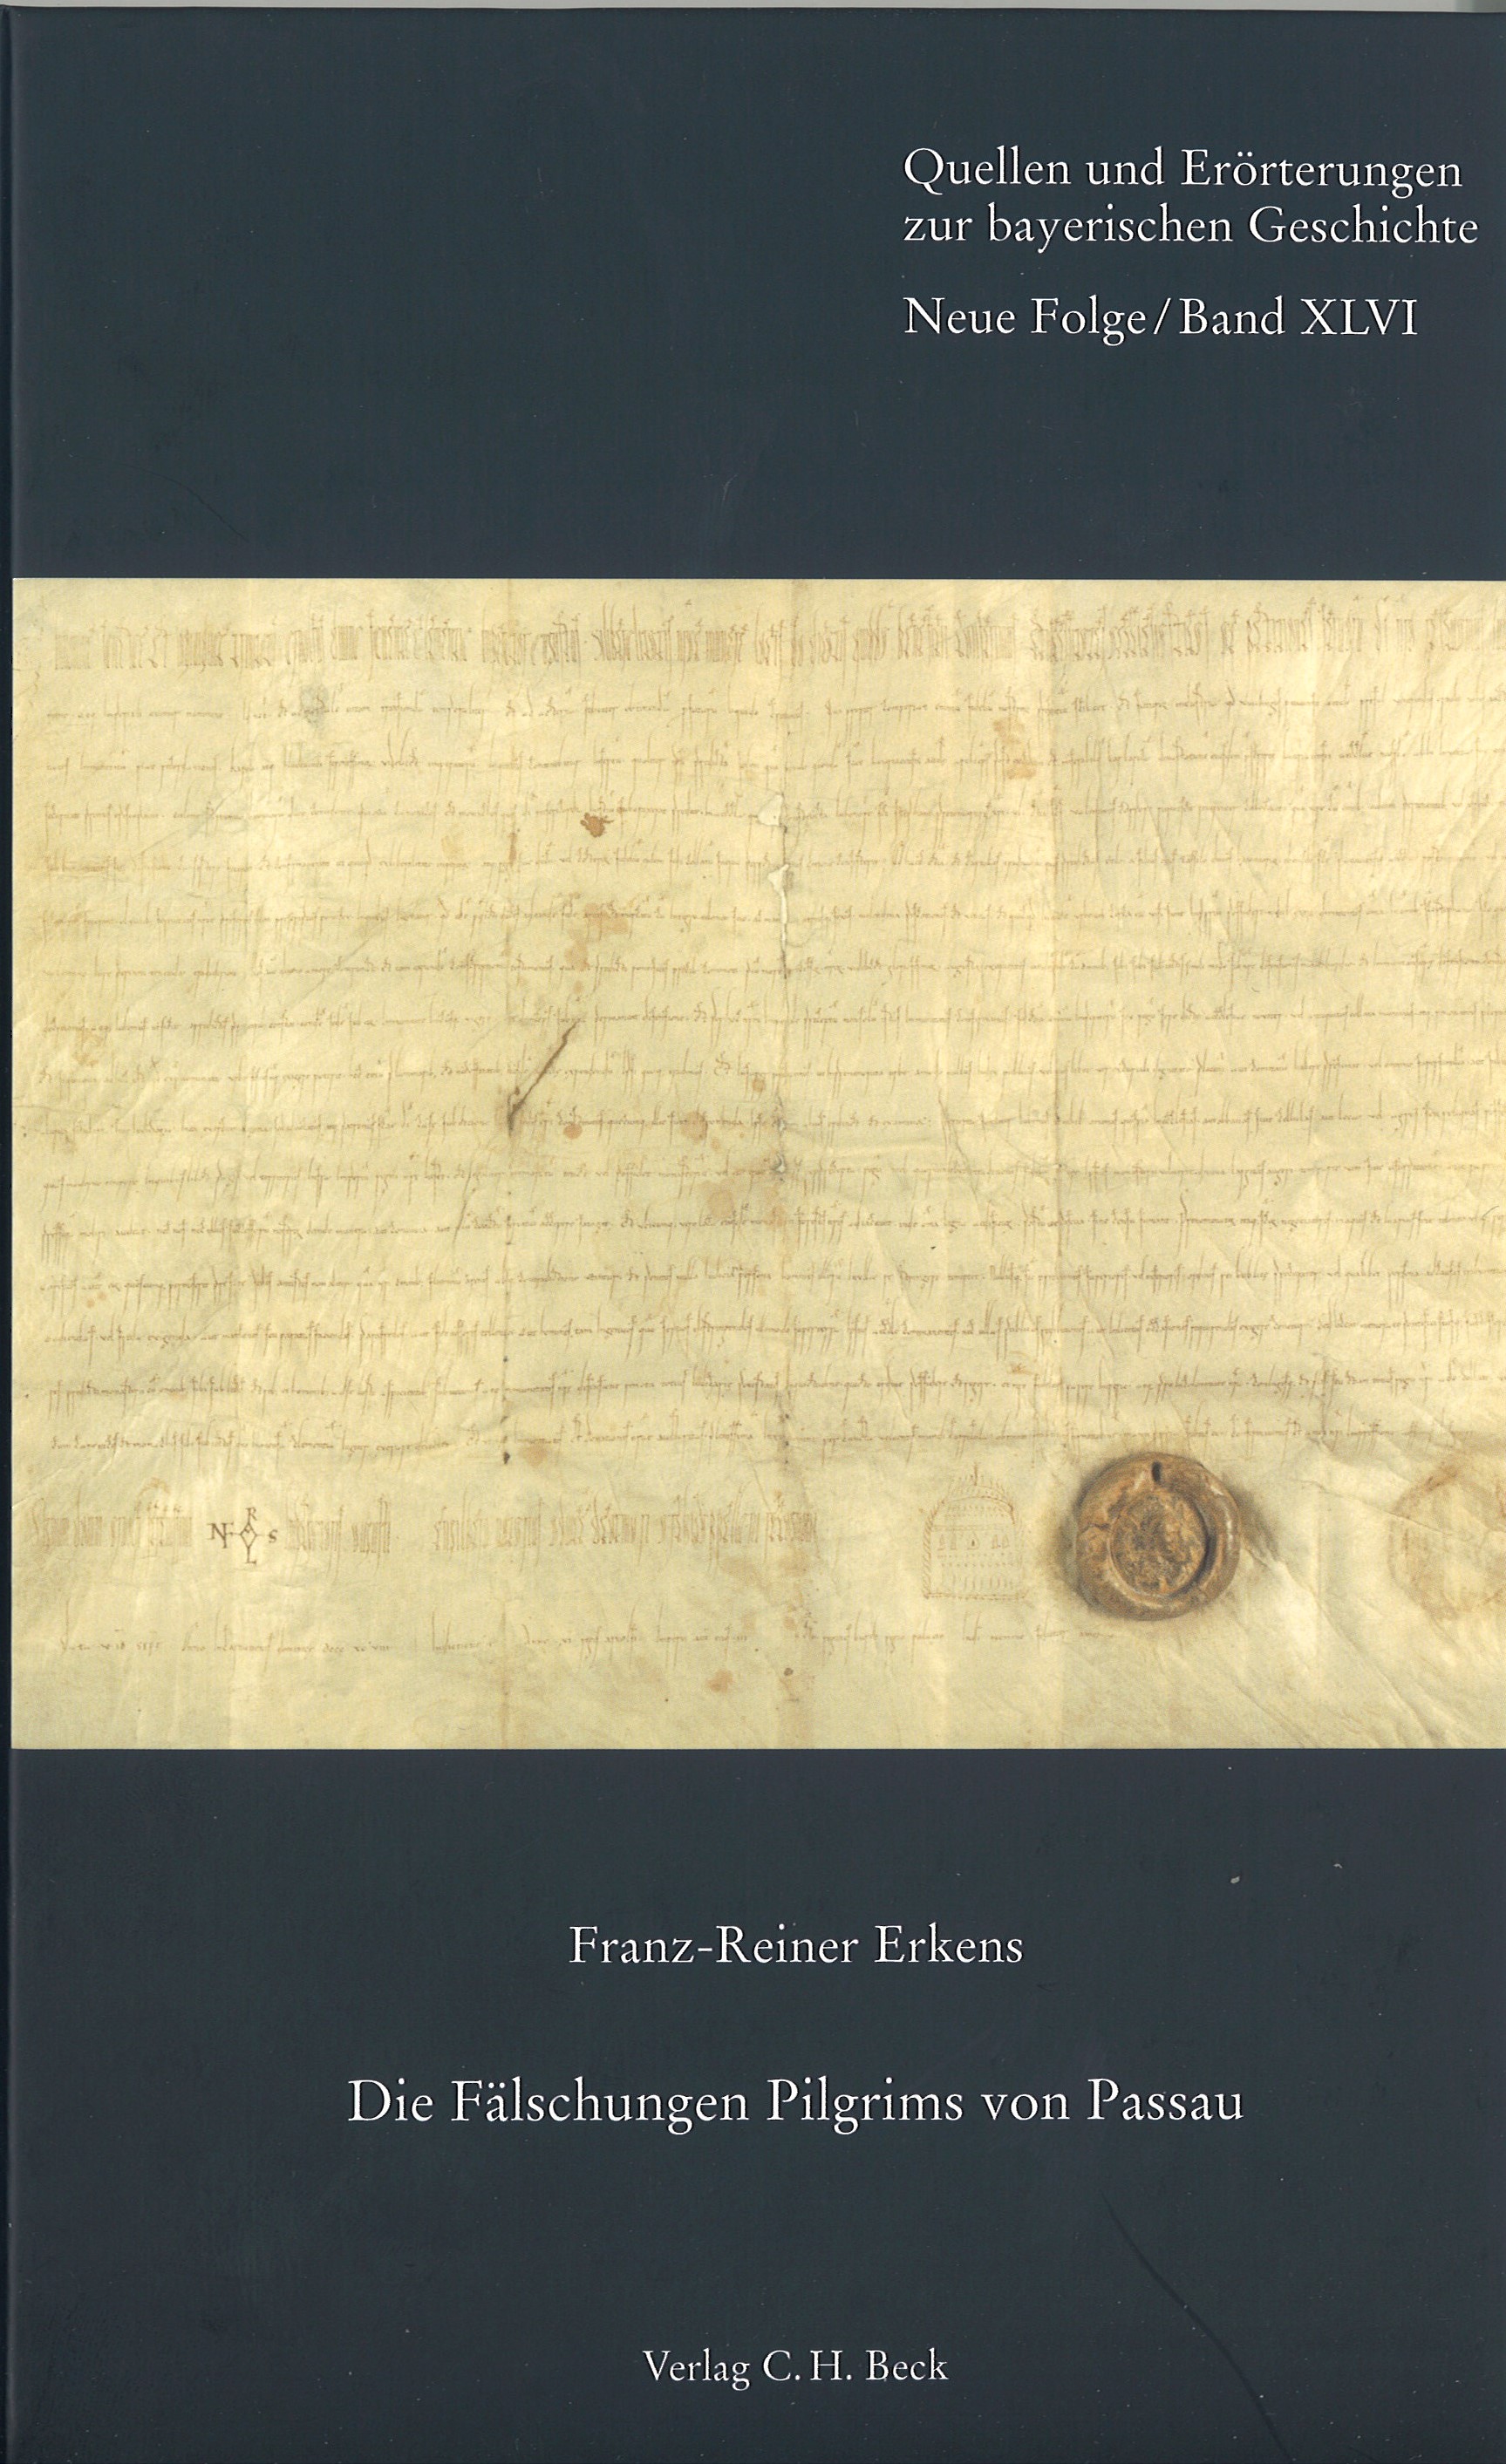 Cover: Erkens, Franz-Reiner, Die Fälschungen Pilgrims von Passau